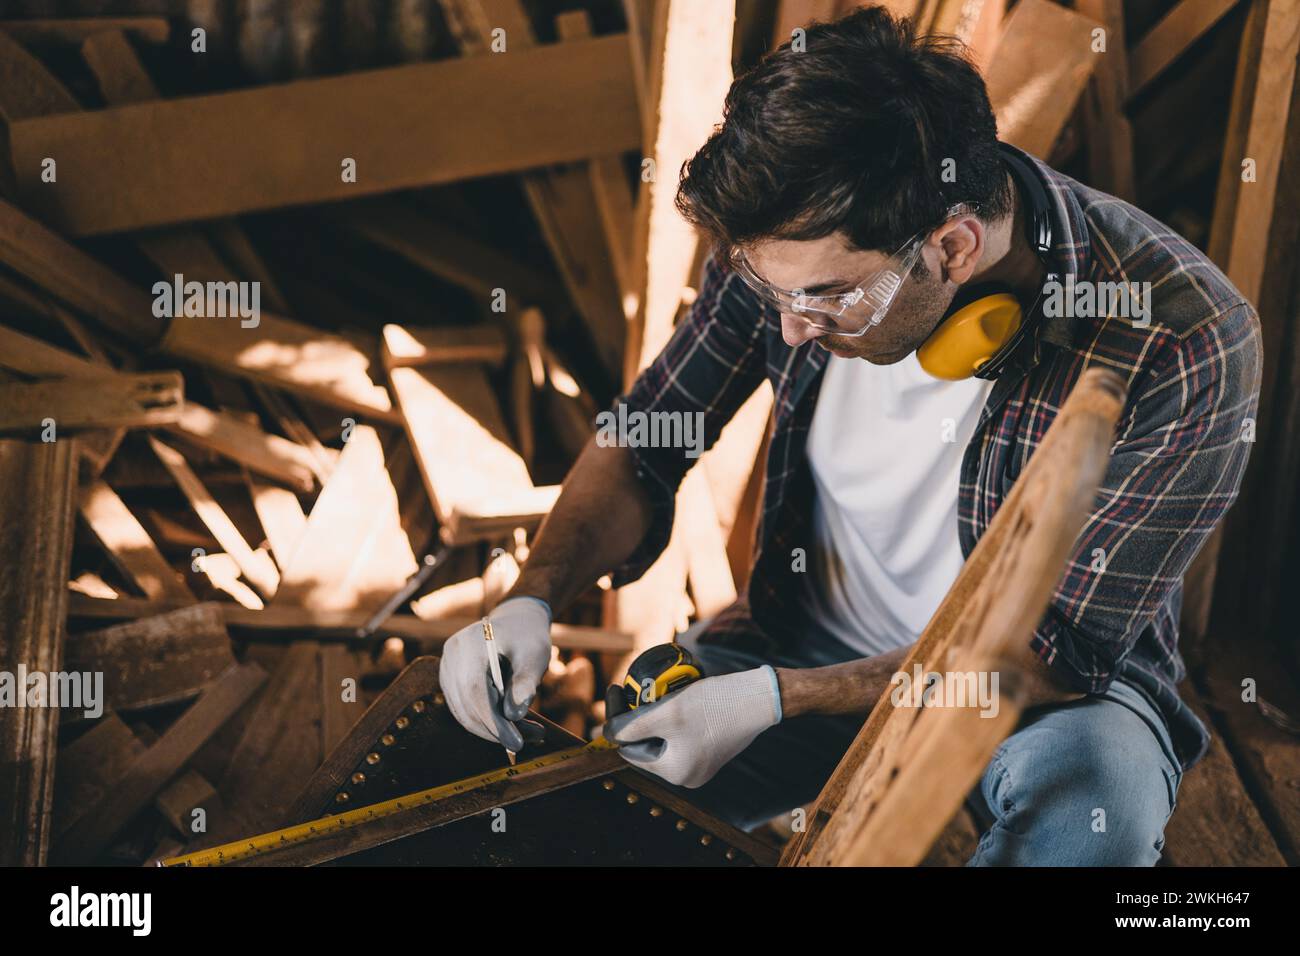 falegname professionista che lavora a mano realizza mobili artigianali in legno capolavori di dettagli artigianali artigiani con officina in legno. Foto Stock